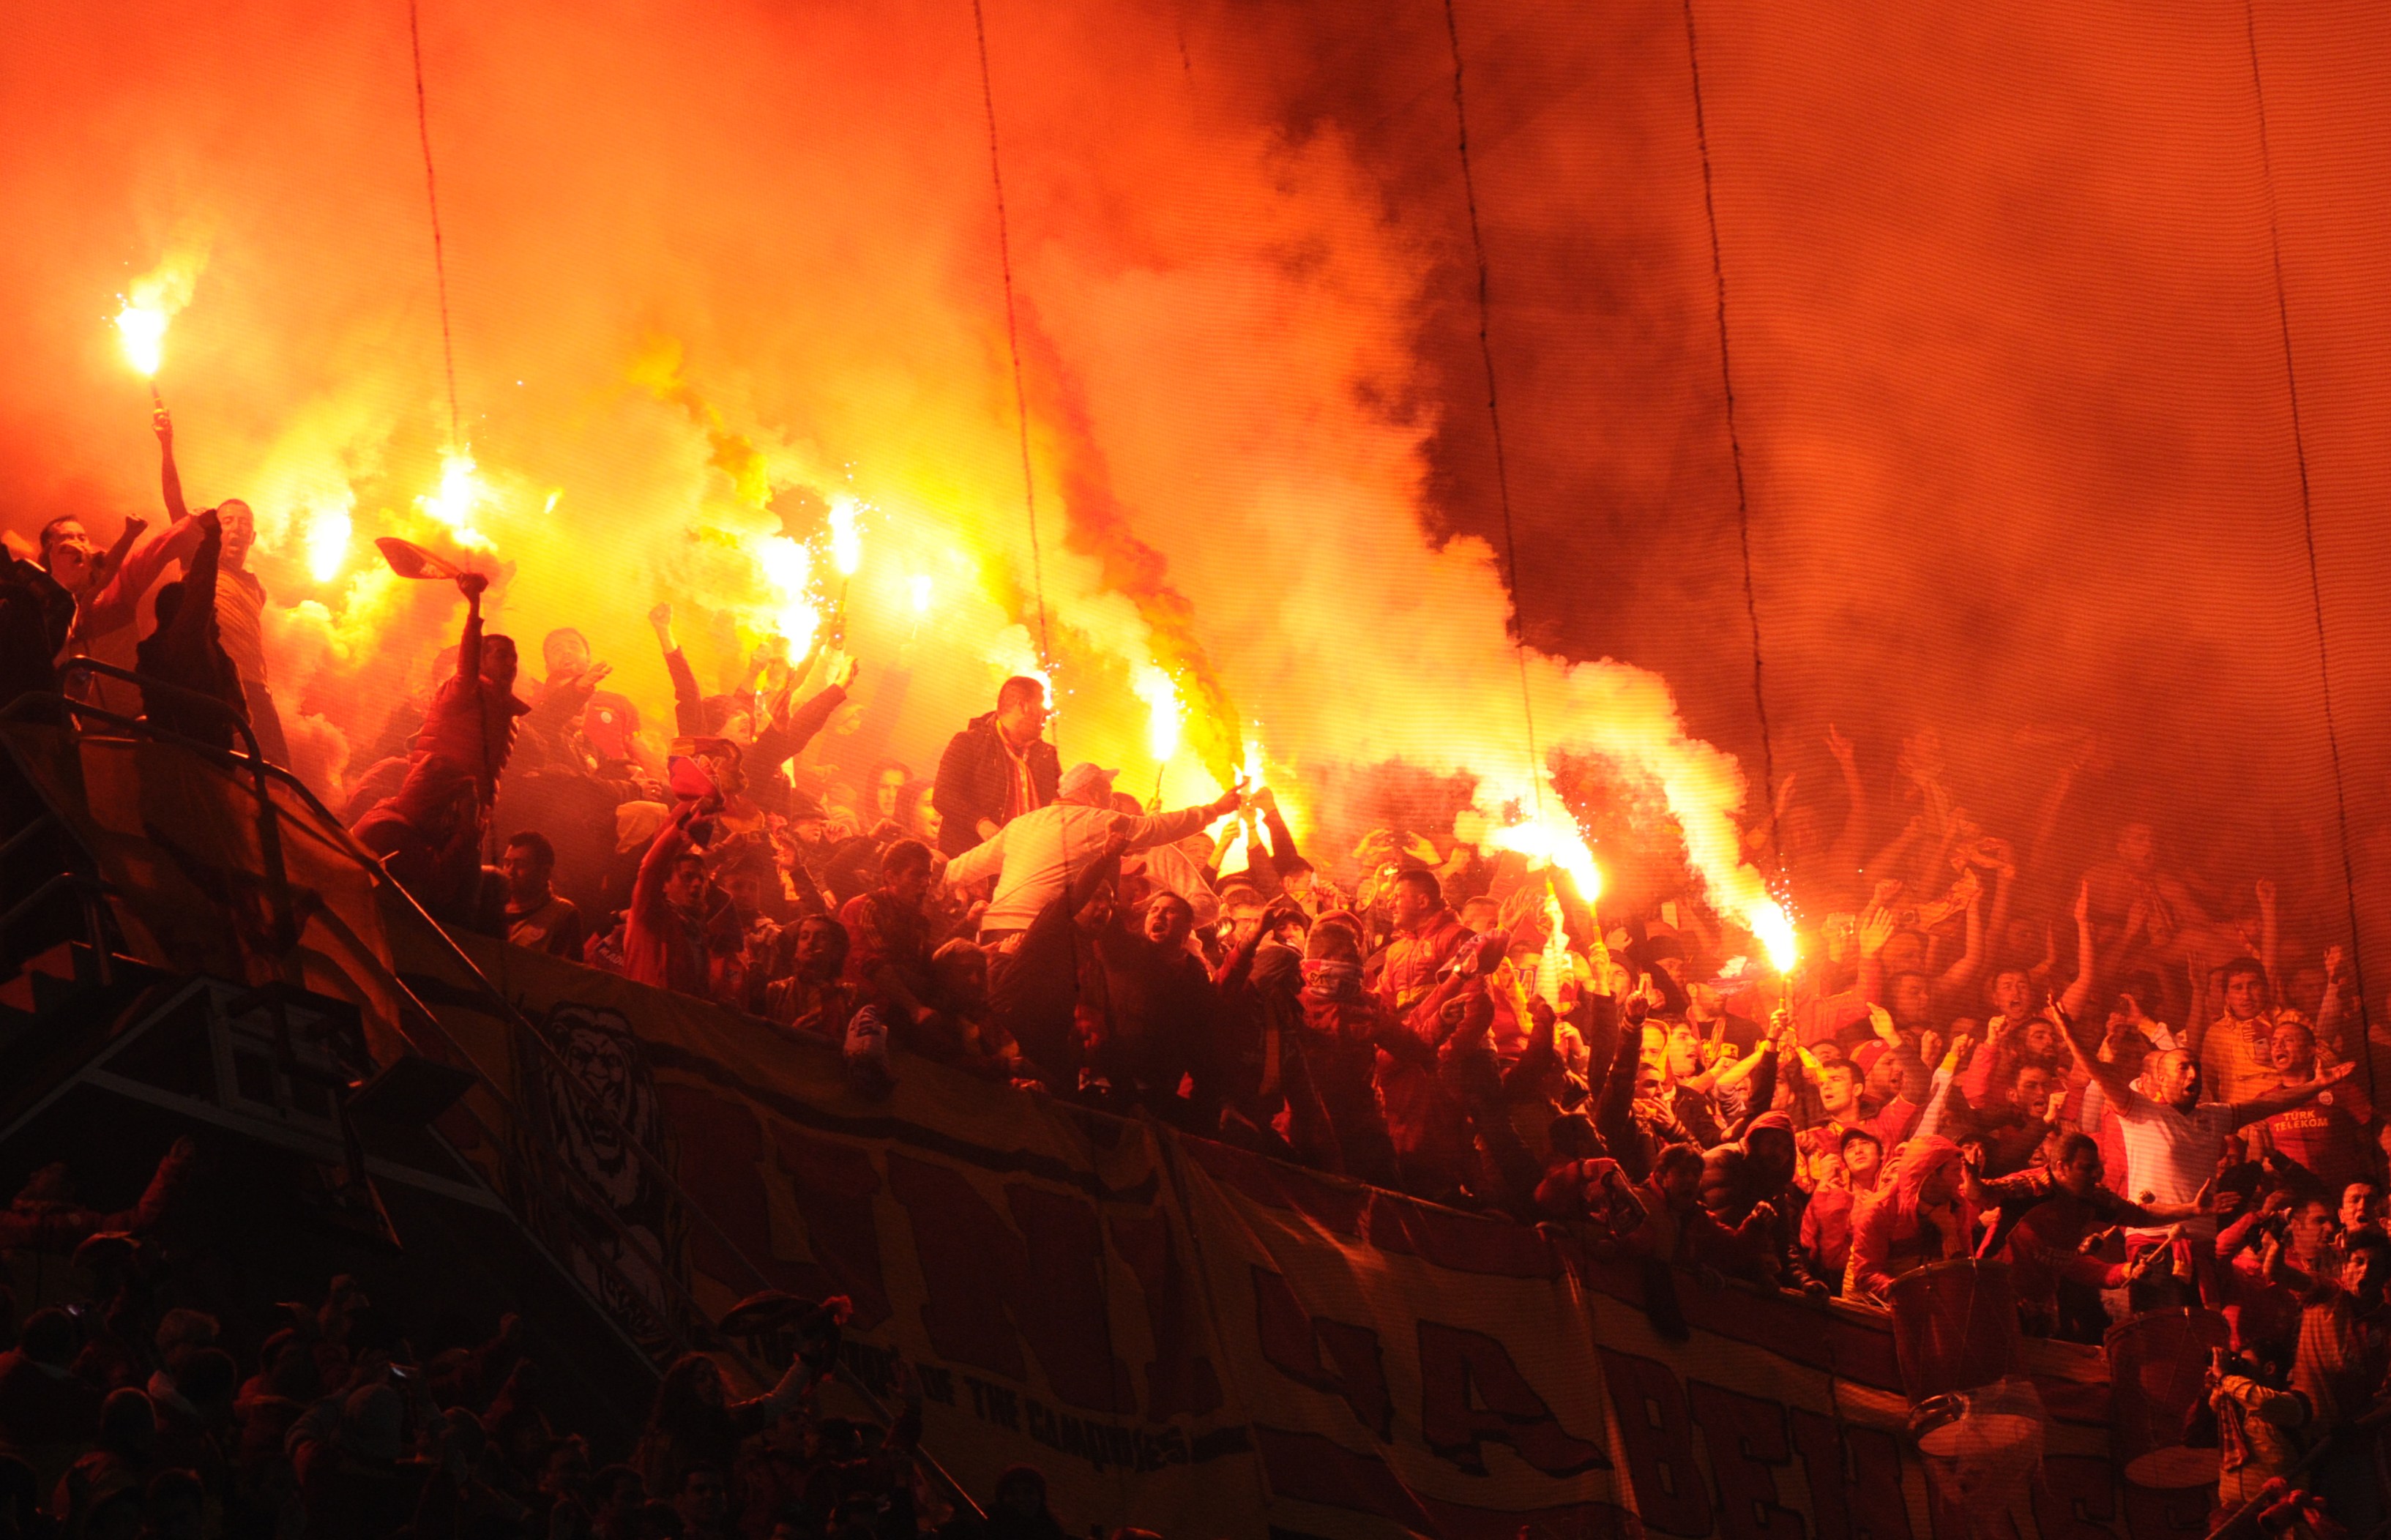 Wie in Deutschland ist Pyrotechnik in der Türkei verboten, ist aber in jedem Stadion gängig und die Verhinderung wird eher halbherzig gehandhabt.